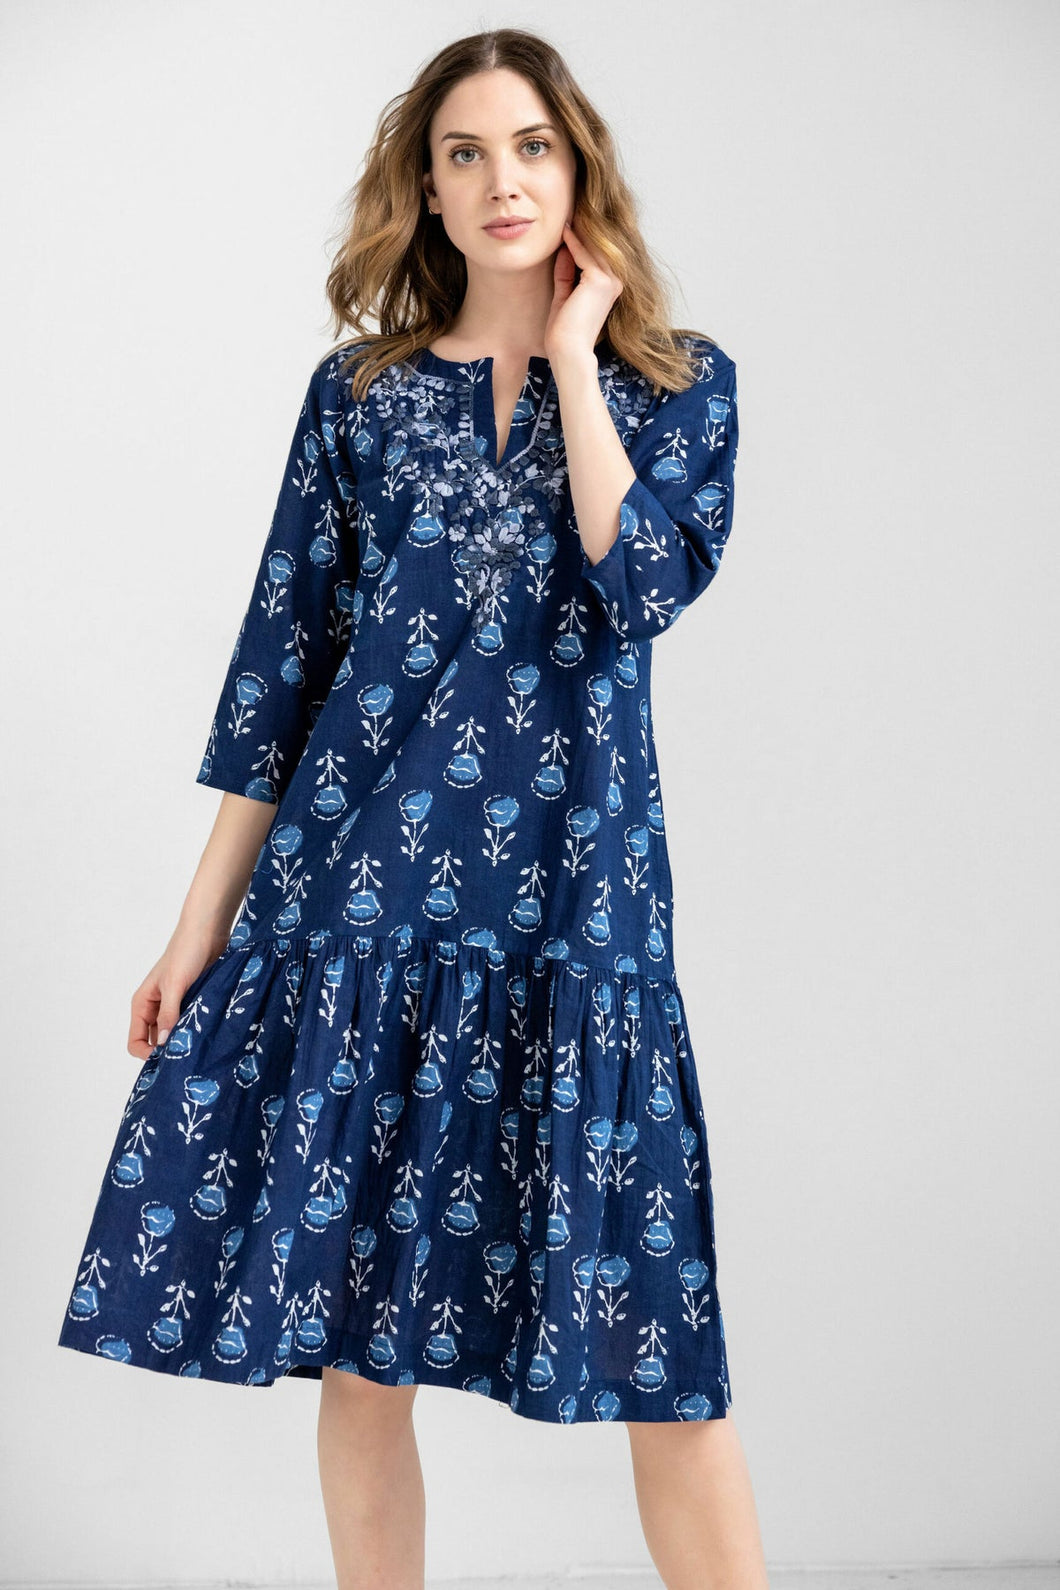 Amaya Textiles Julie Midi Dress; Blue